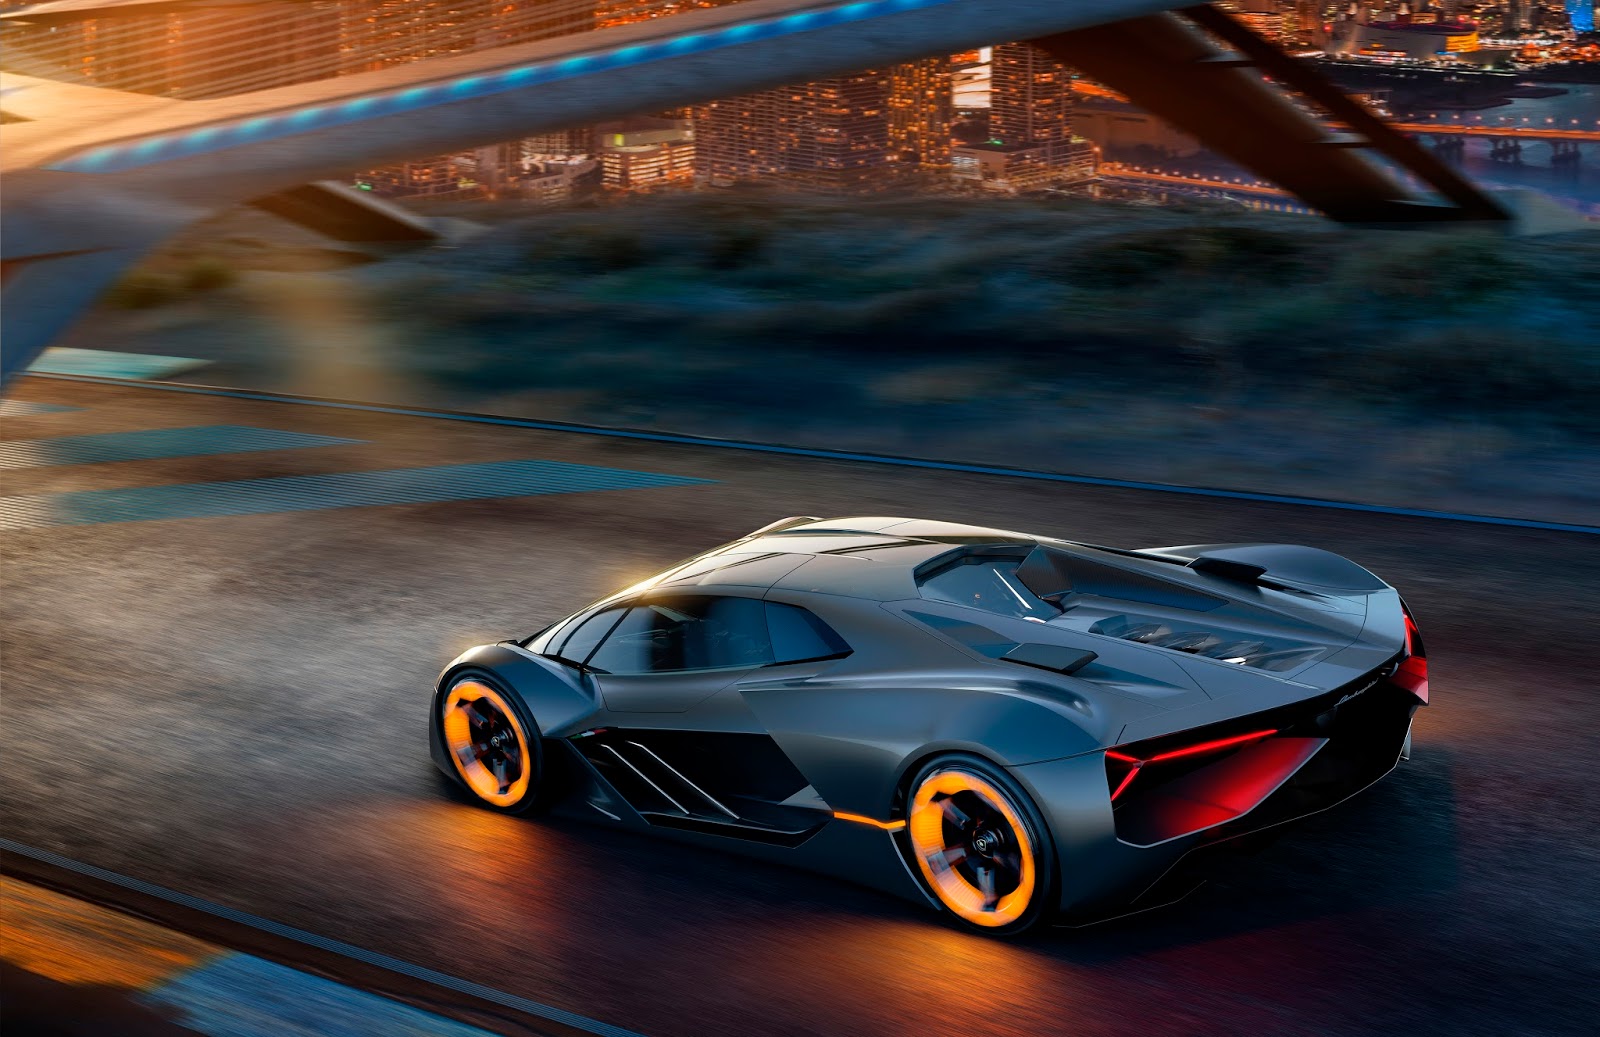 Lamborghini of the Terzo Millennio - the electric super sports car of the future